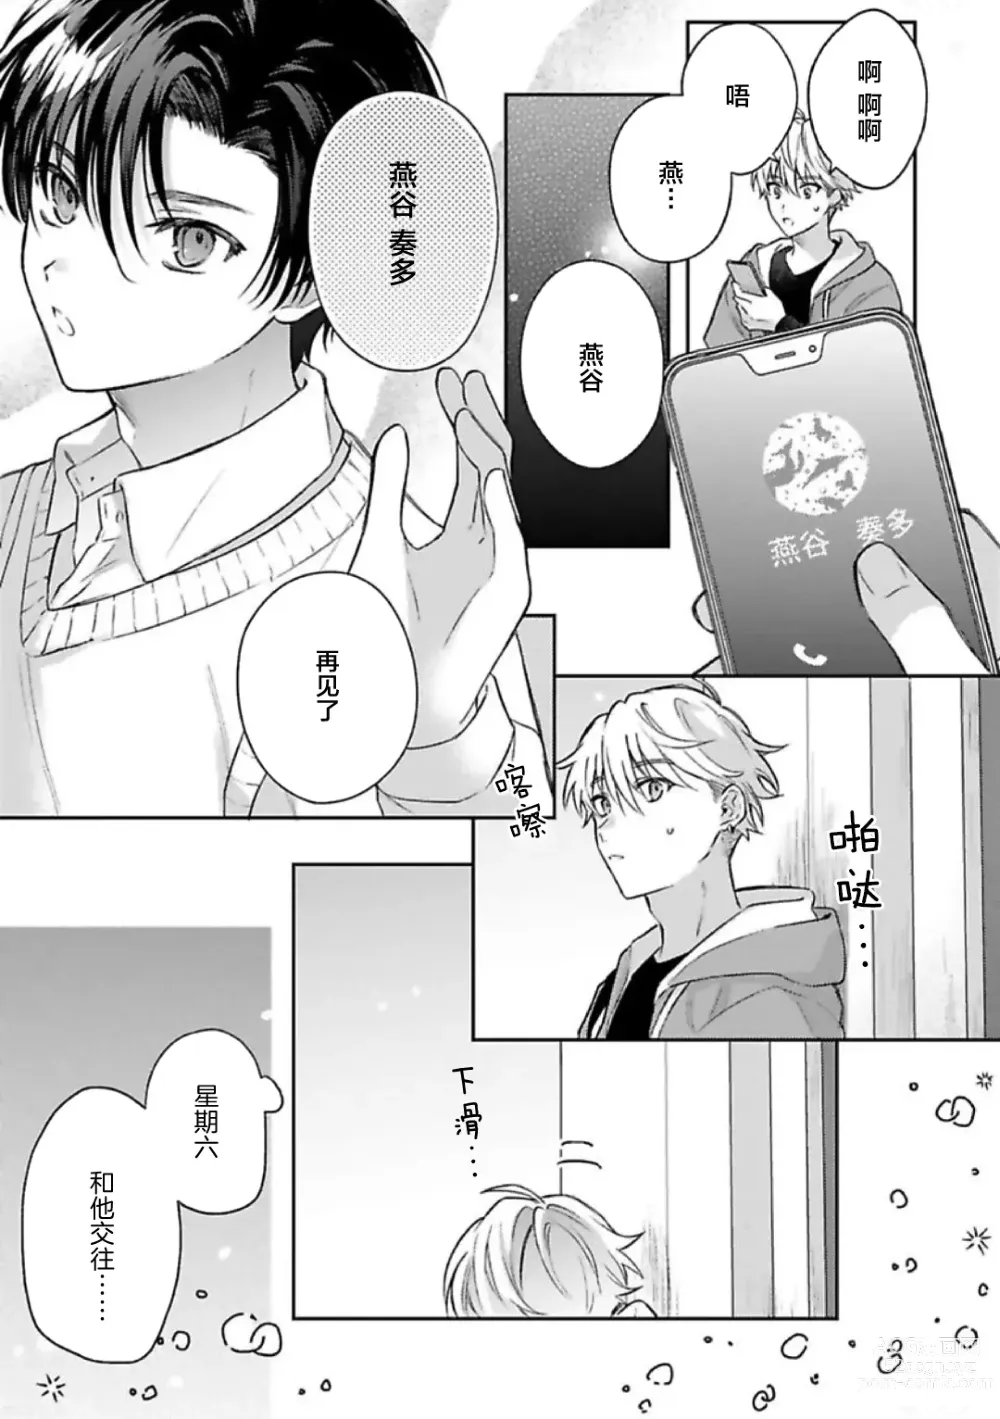 Page 22 of manga Sagashimonoha Kimidesuka｜你是我的所寻之物吗